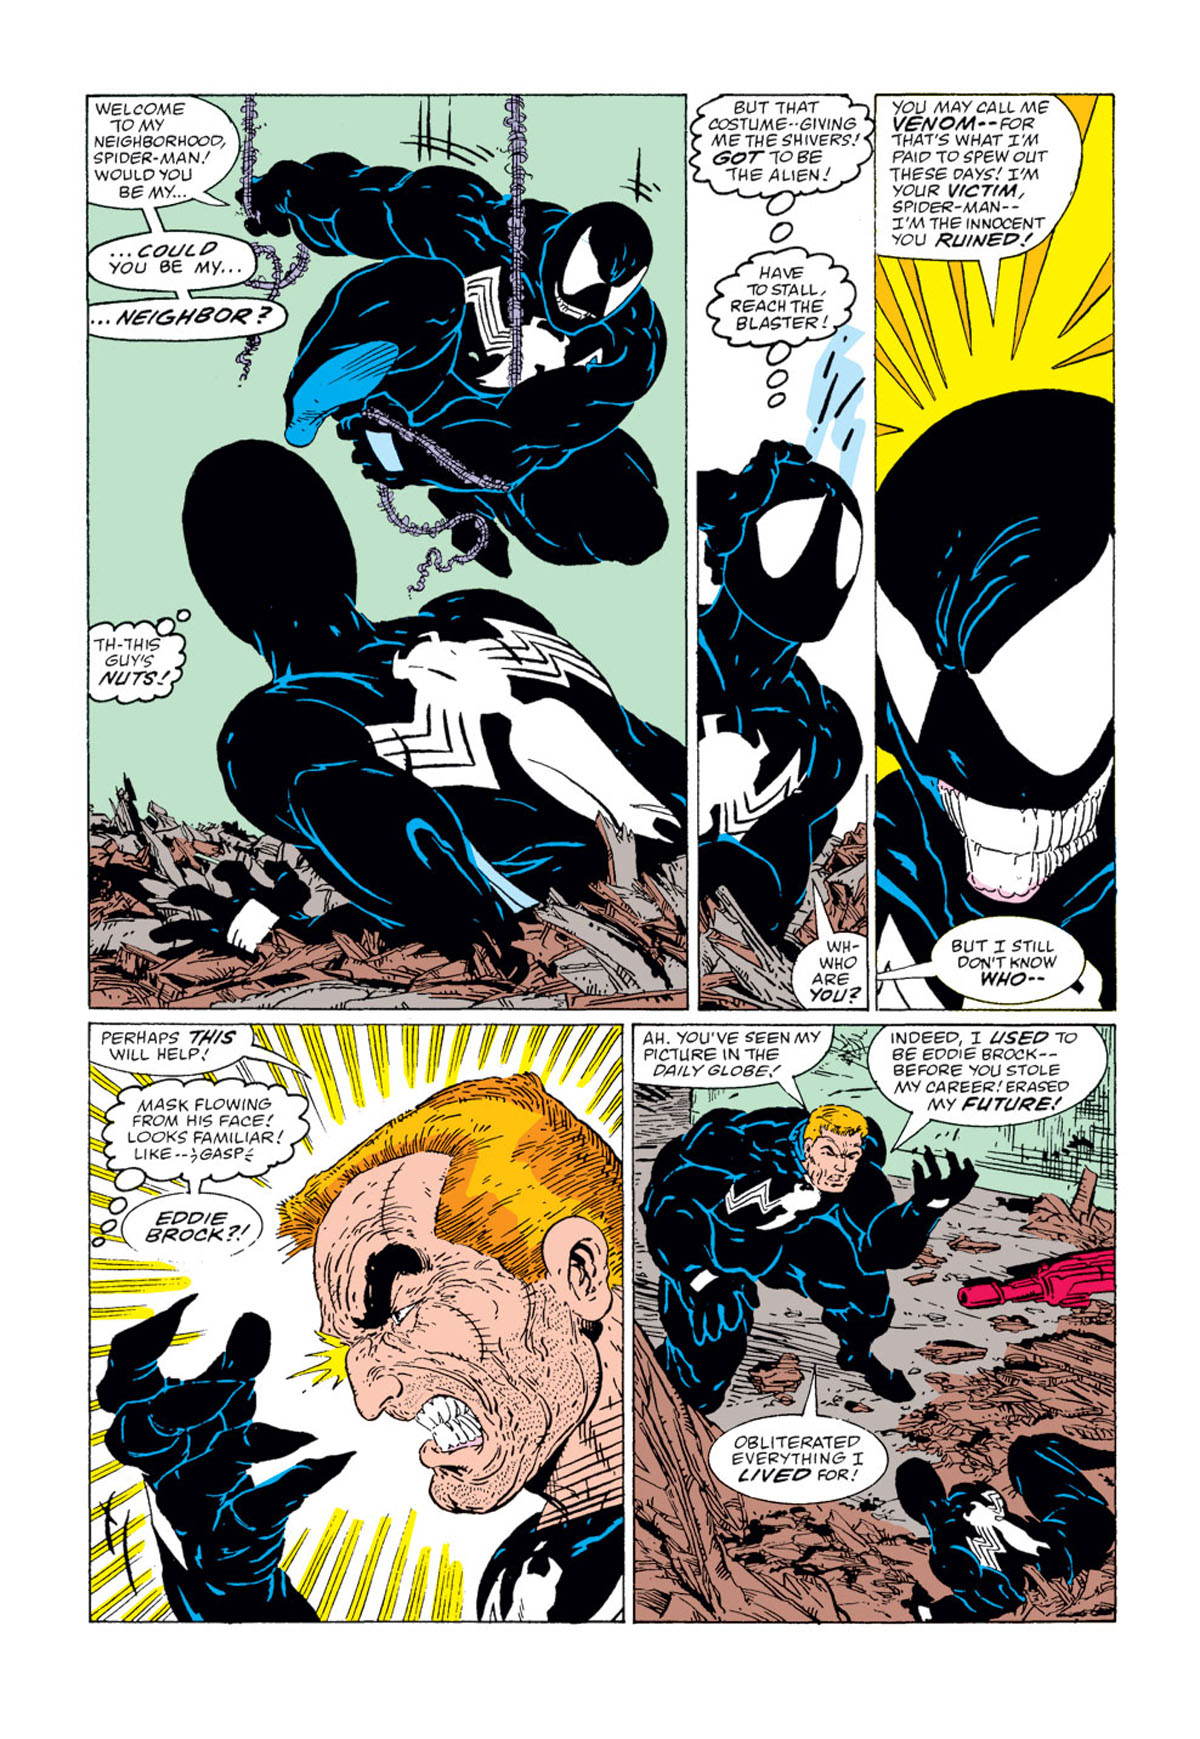 10: Venom – Amazing Spider-Man #300